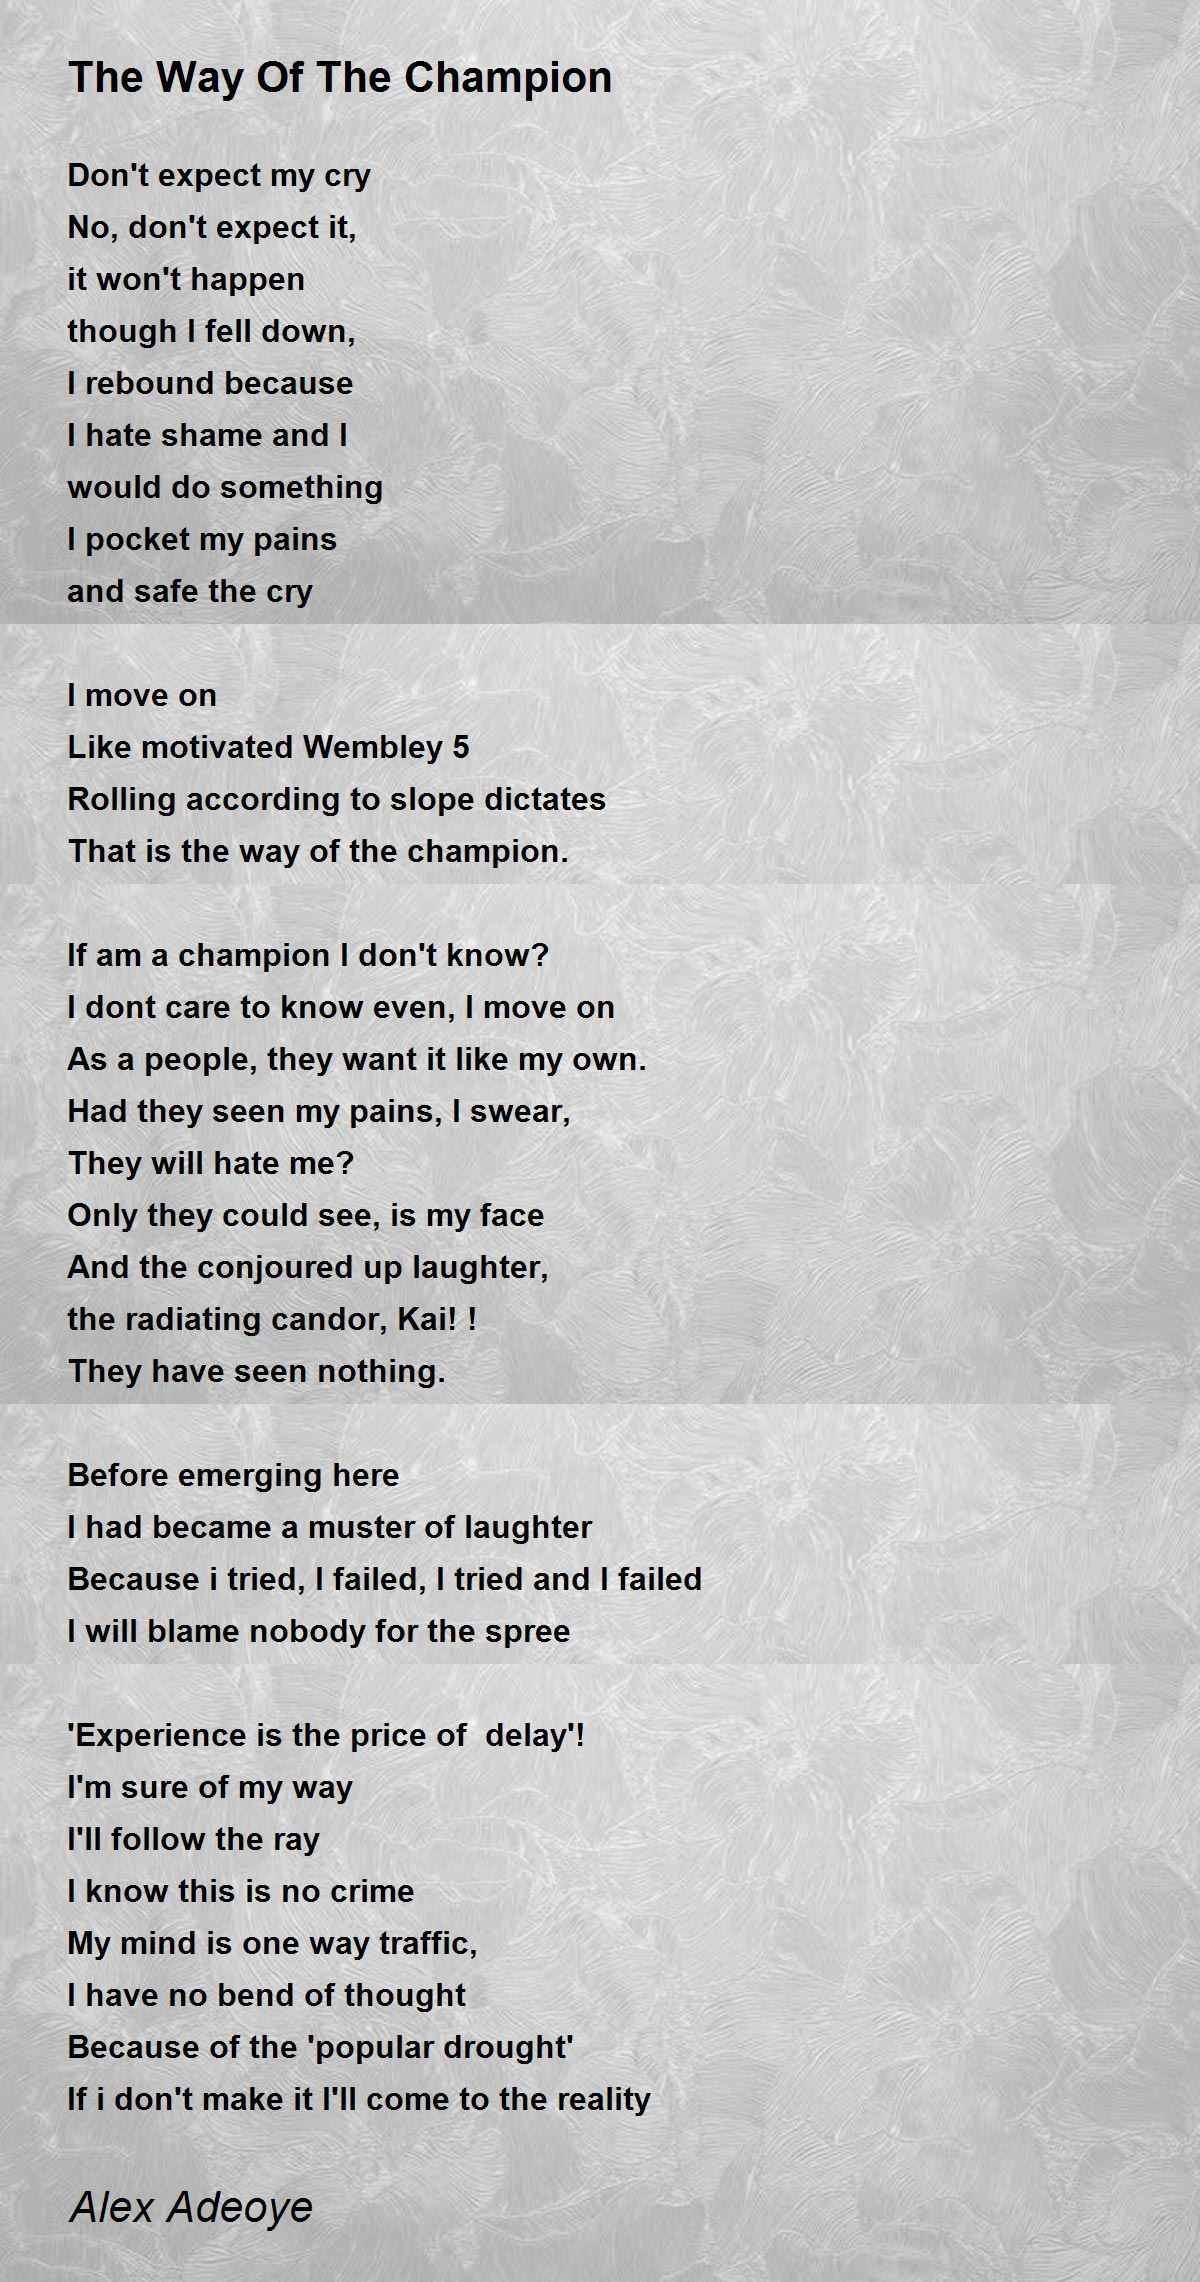 Portræt Mange indendørs The Way Of The Champion - The Way Of The Champion Poem by Alex Adeoye